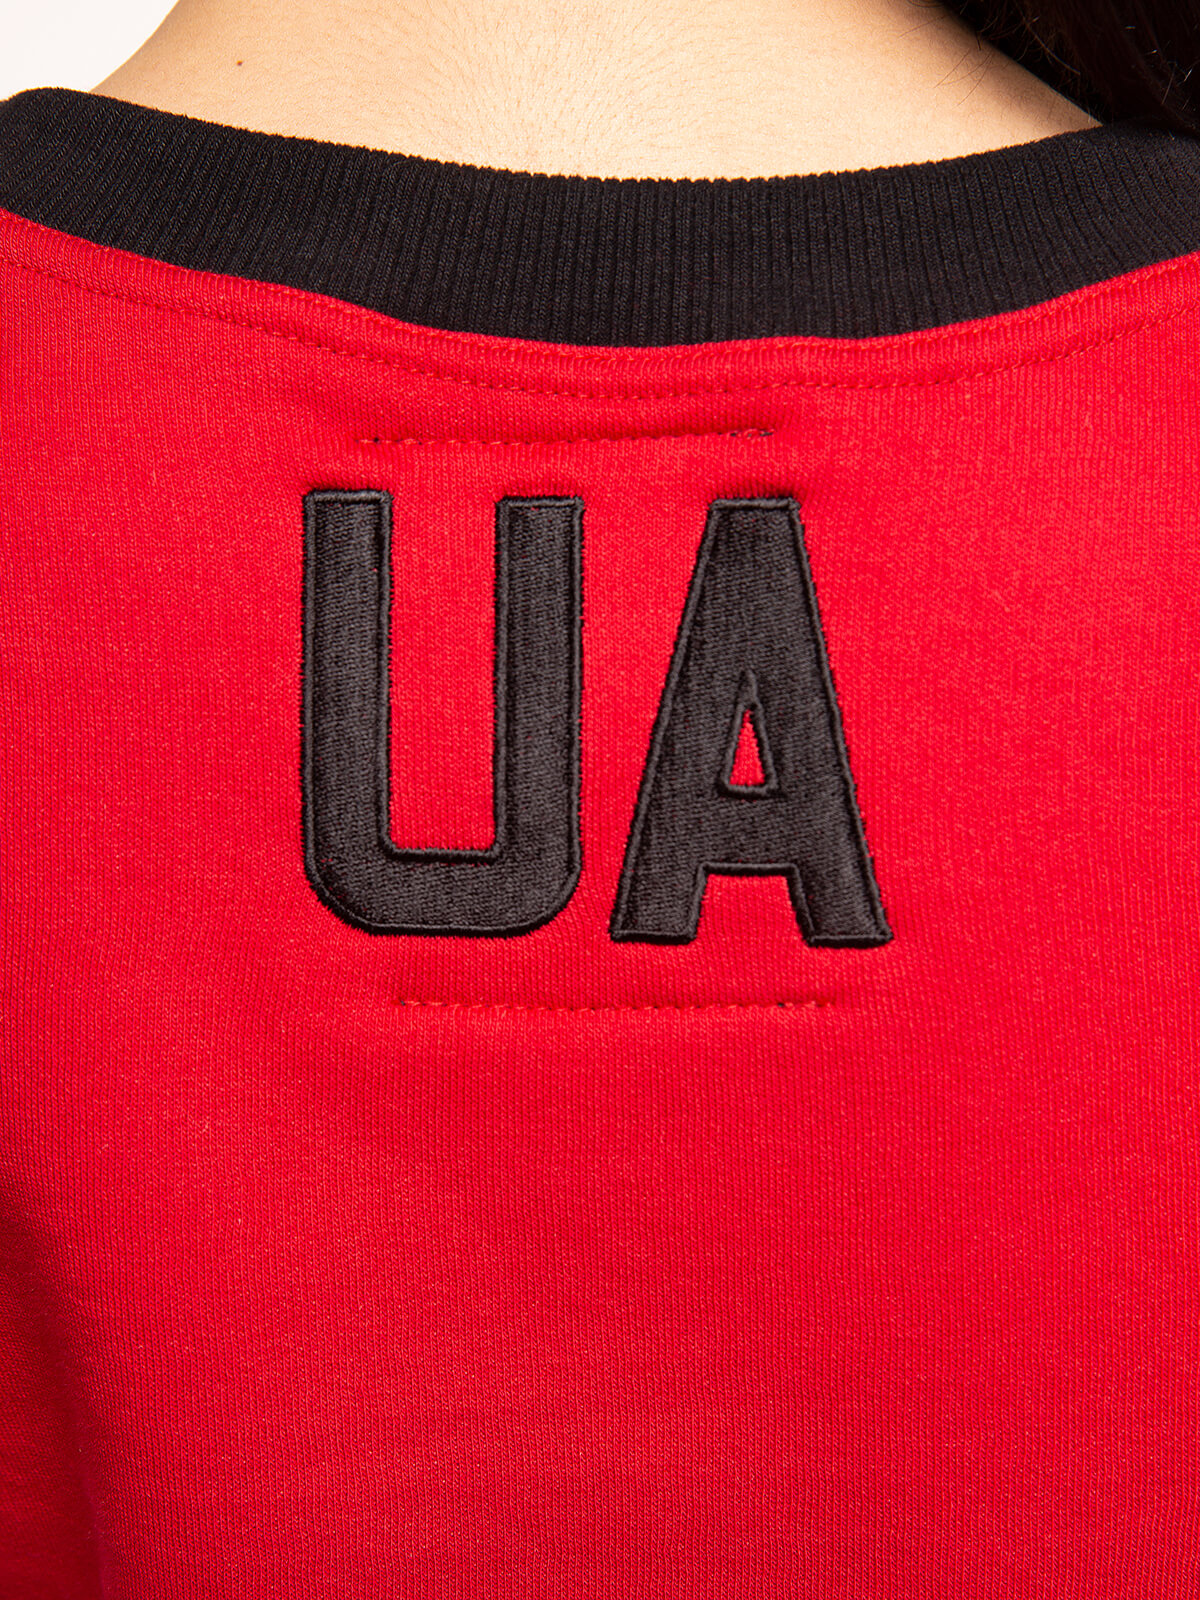 Women's Sweatshirt Ua. Color red. 8.